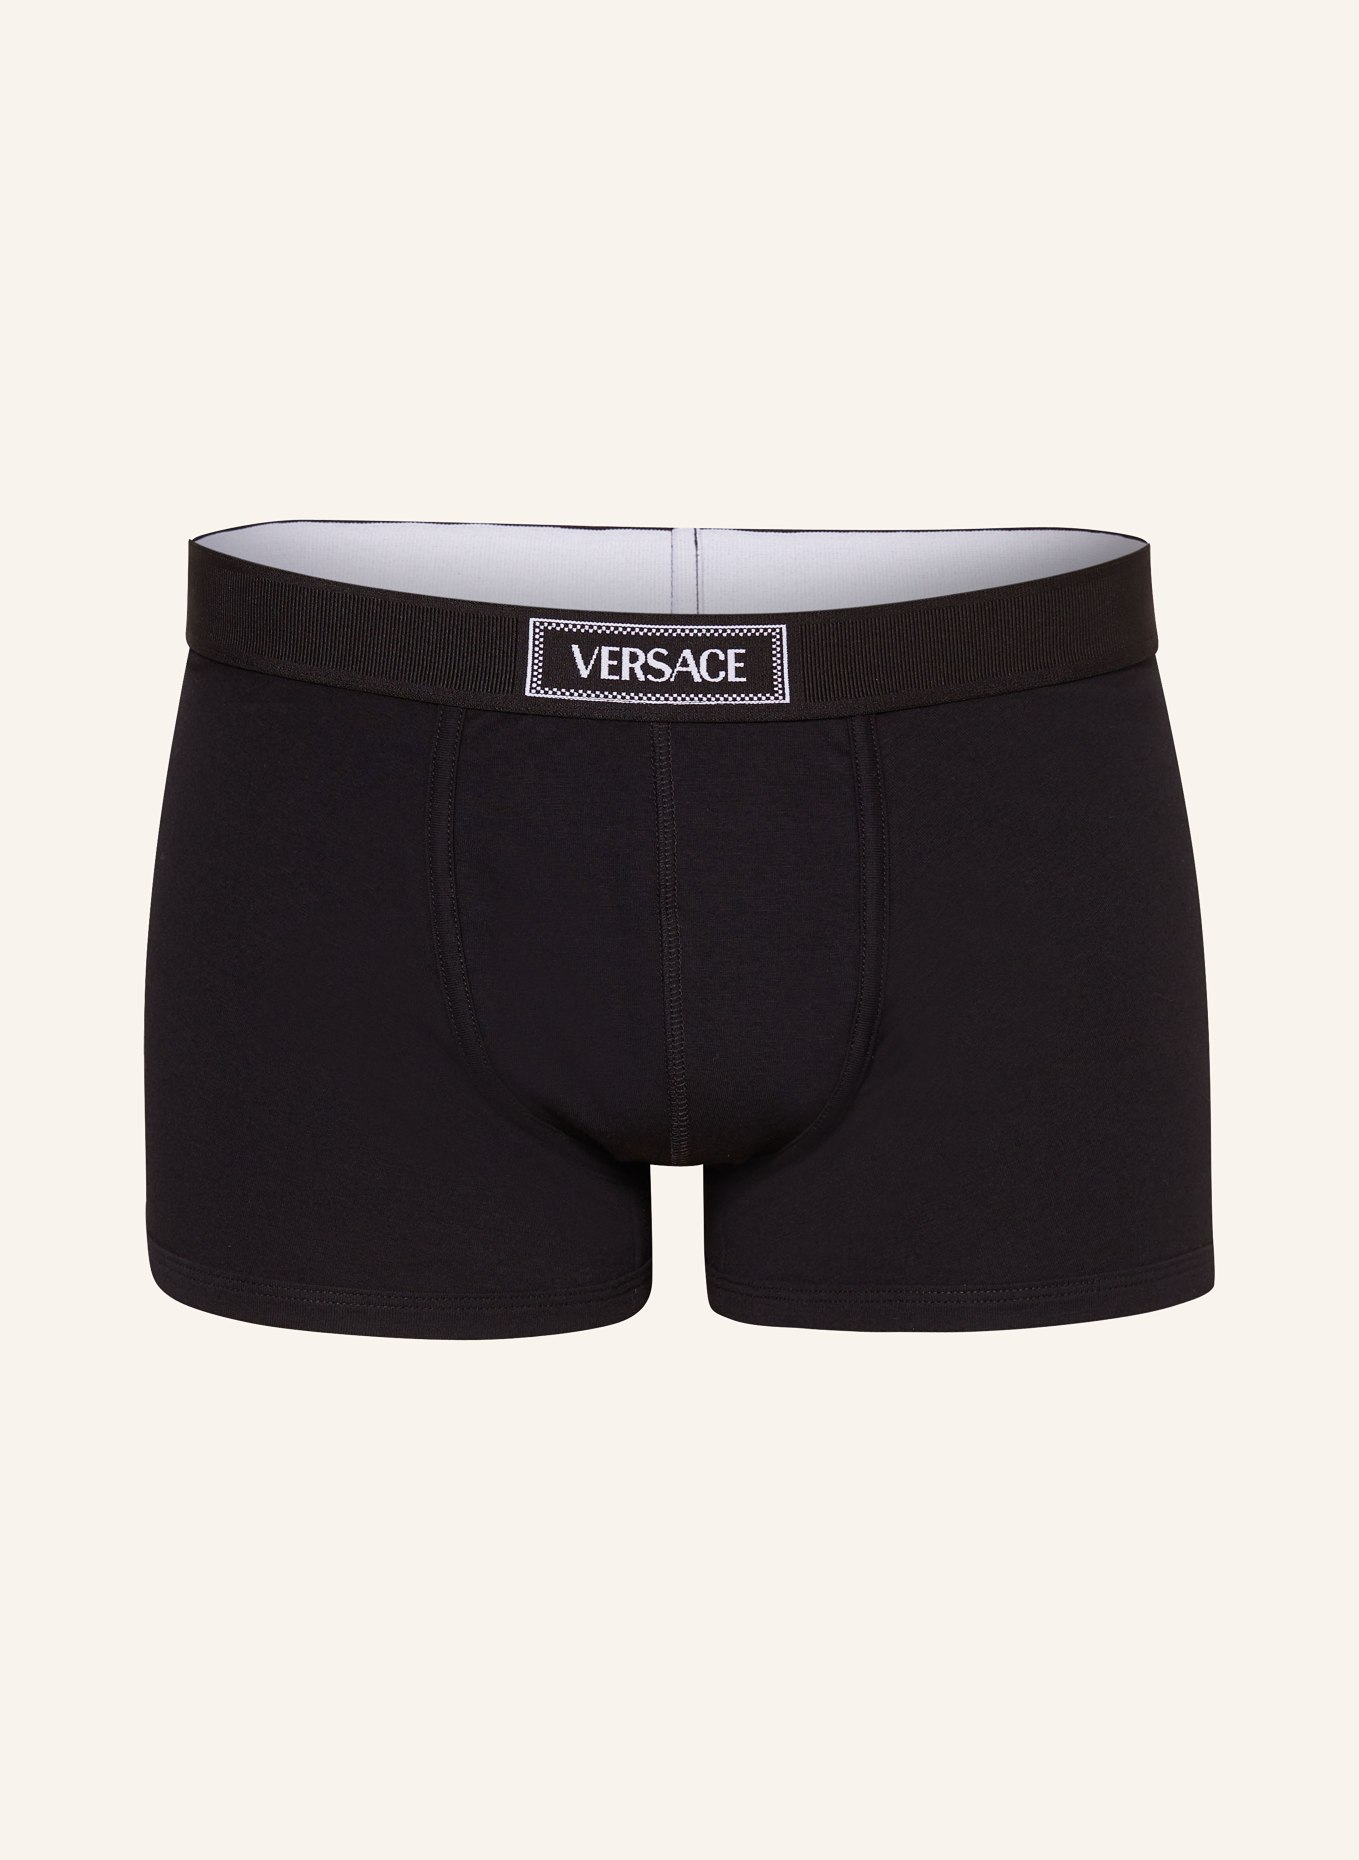 VERSACE Boxer shorts, Color: BLACK (Image 1)